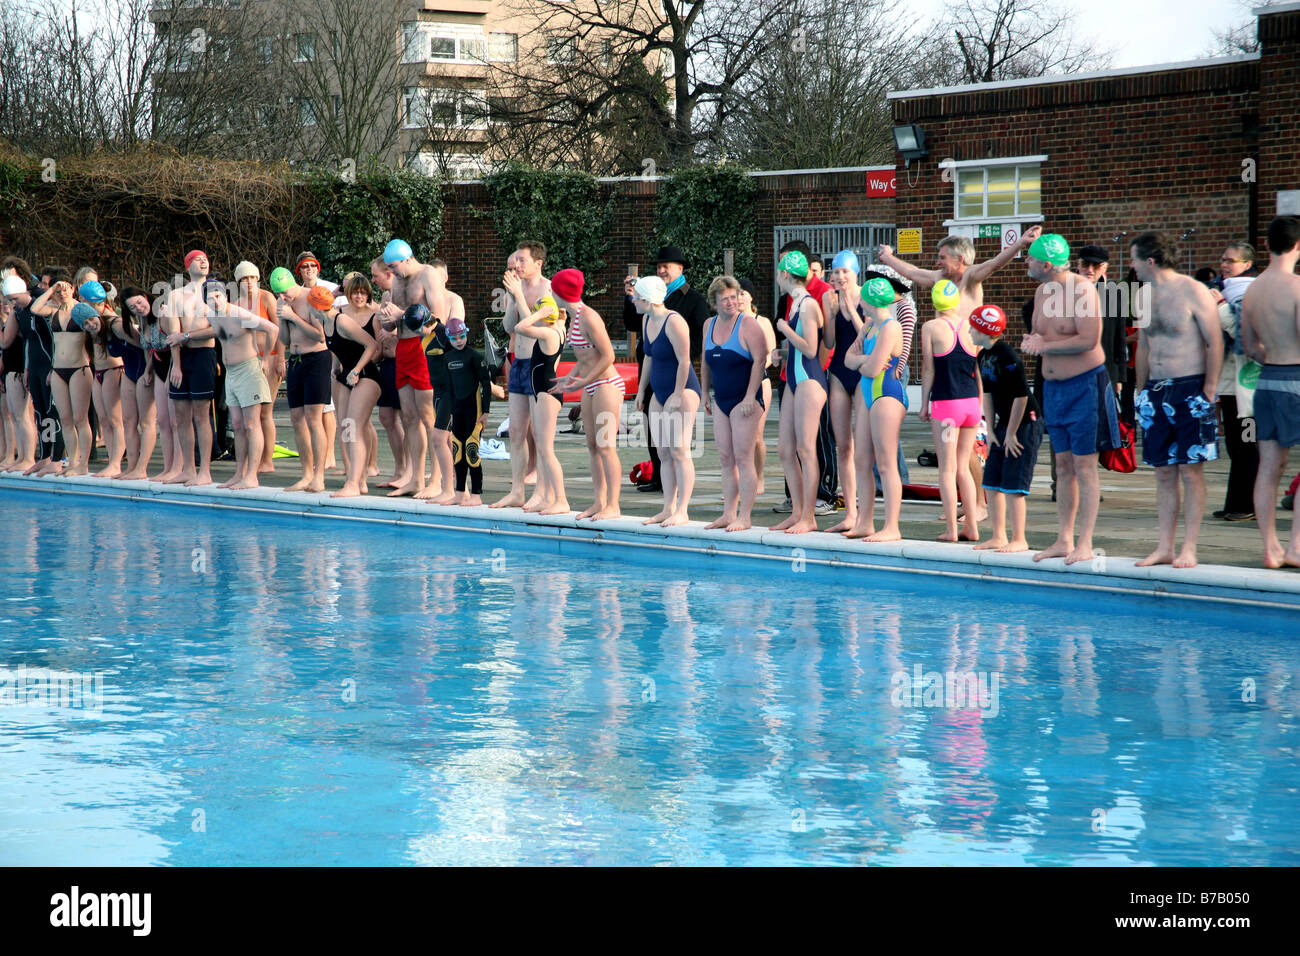 Les participants à la charité de natation d'hiver Parc Brockwell Lido, dans le sud de Londres Banque D'Images